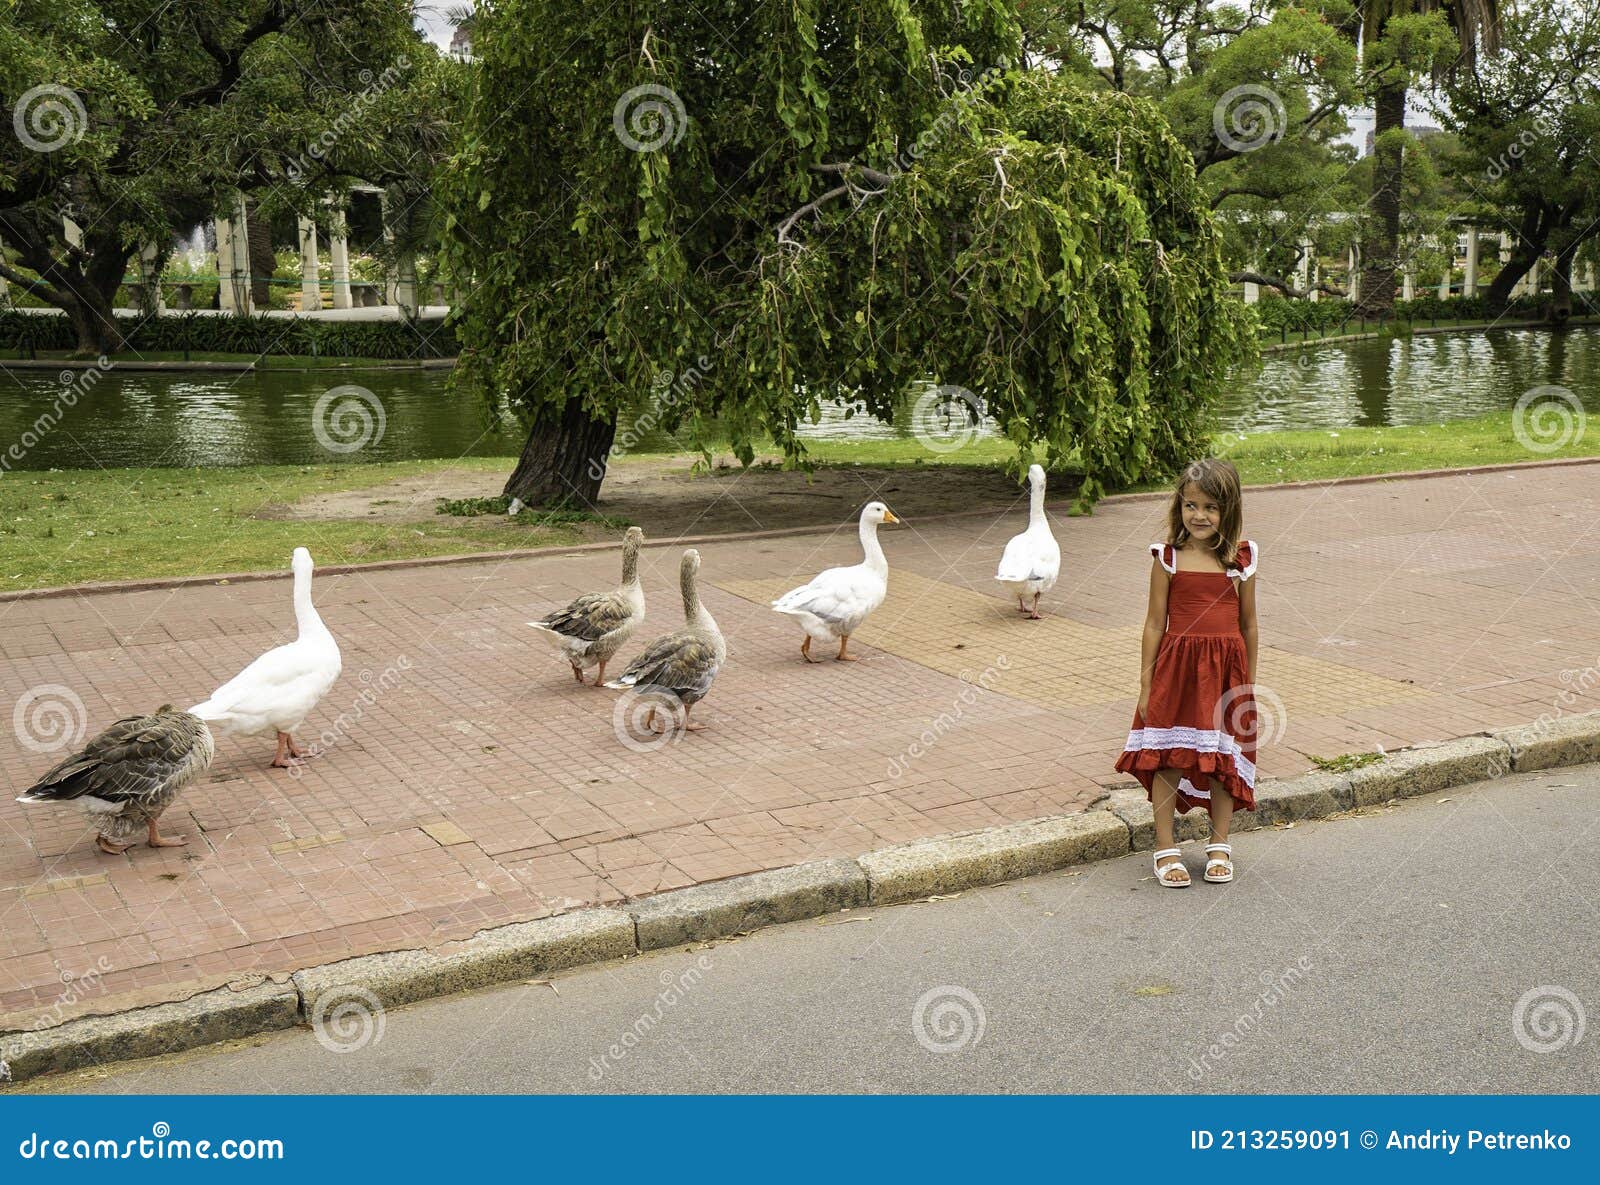 walking geese in rosedal park in buenos aires